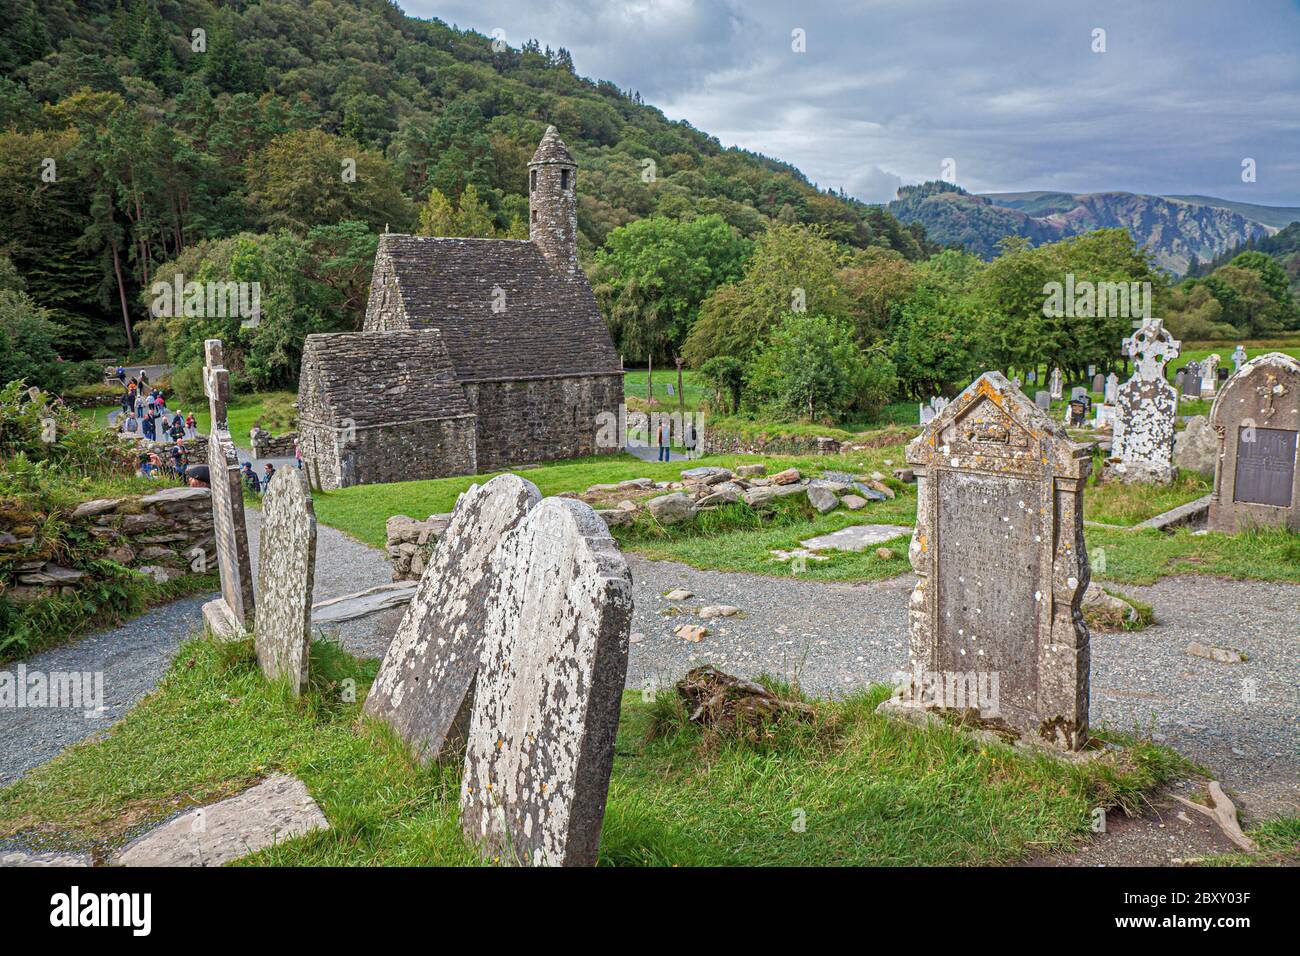 Glendalough im irischen Wicklow Mountains National Park bewahrt eine frühmittelalterliche Klostersiedlung, die im sechsten Jahrhundert von St. Kevin gegründet wurde. Stockfoto